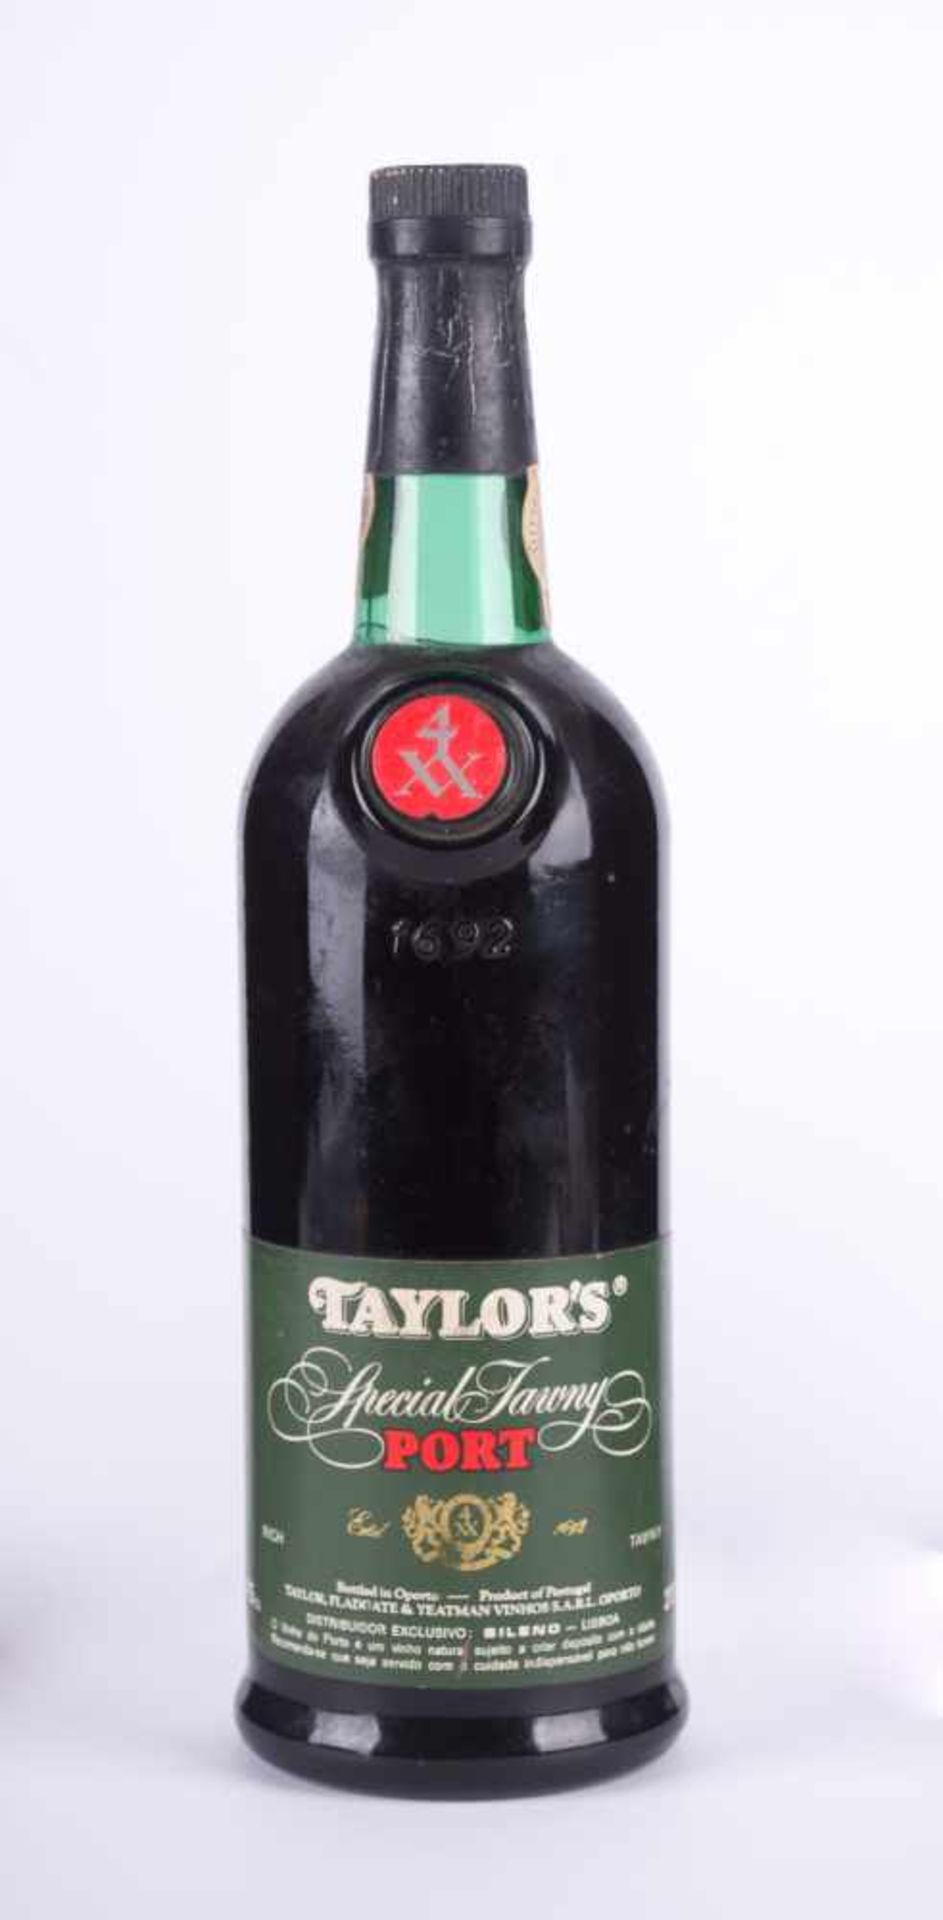 Taylor's Portwein 1960/70er Füllstand normal, Etikett guter Zustand, 0,75 l Taylor's port wine